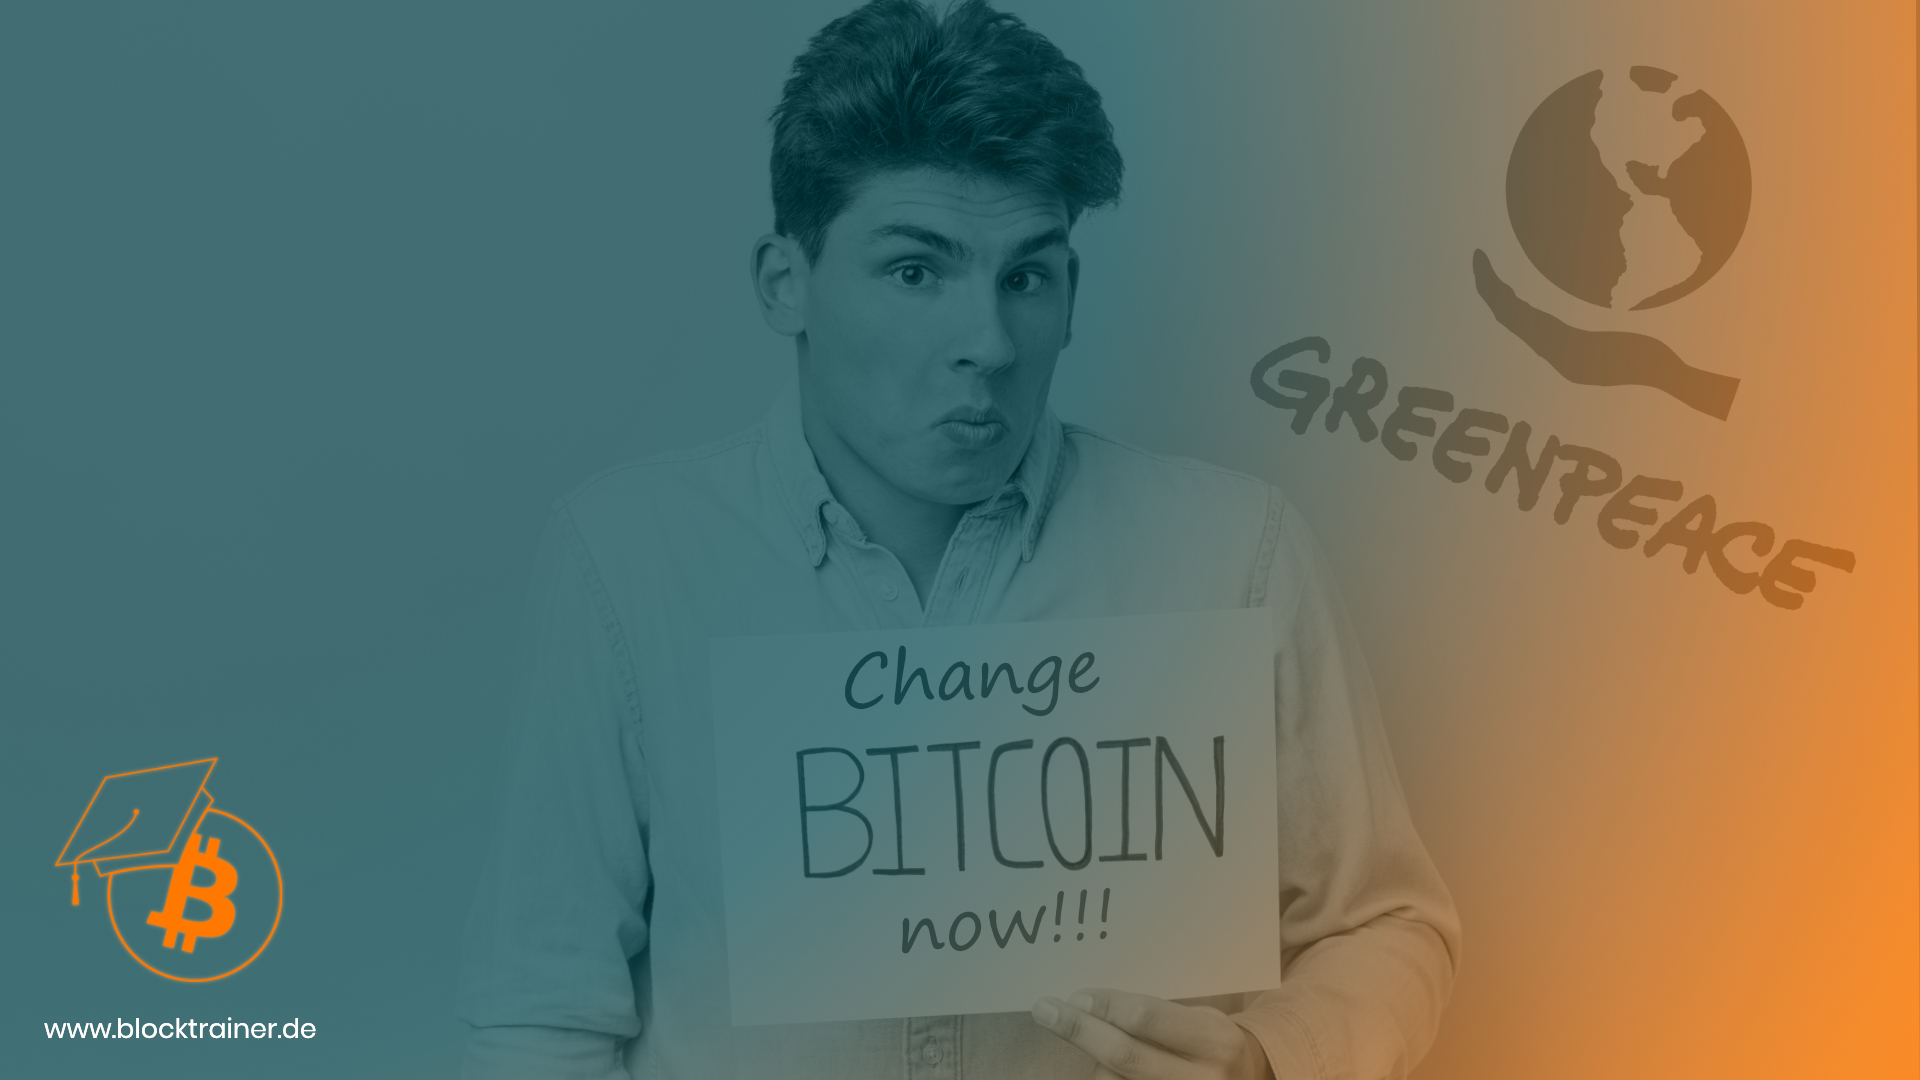 Bitcoin Greenpeace